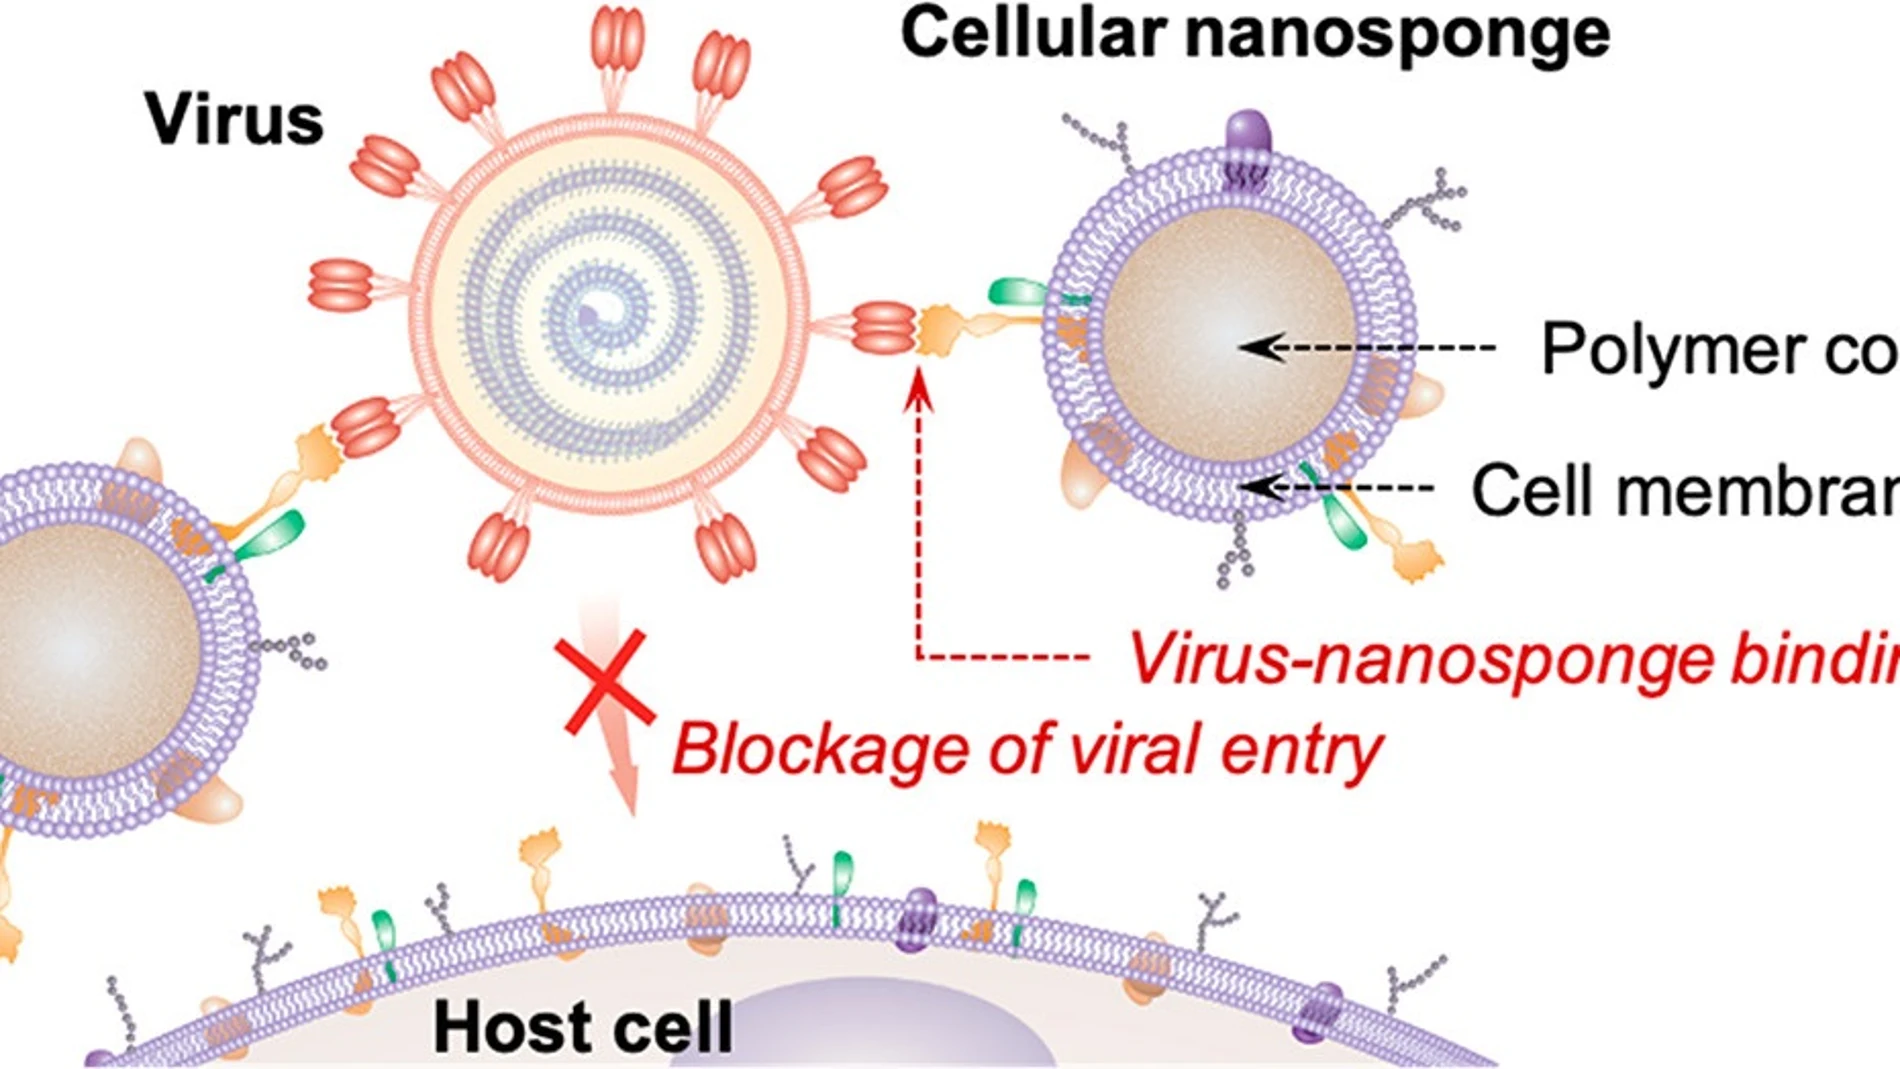 Esquema del principio de funcionamiento de las nanoesponjas. Las nanopartículas poliméricas están cubiertas con membranas celulares humanas para que el SARS-CoV-2 esté rodeado por las nanoesponjas antes de que pueda ingresar a cualquier célula huésped.